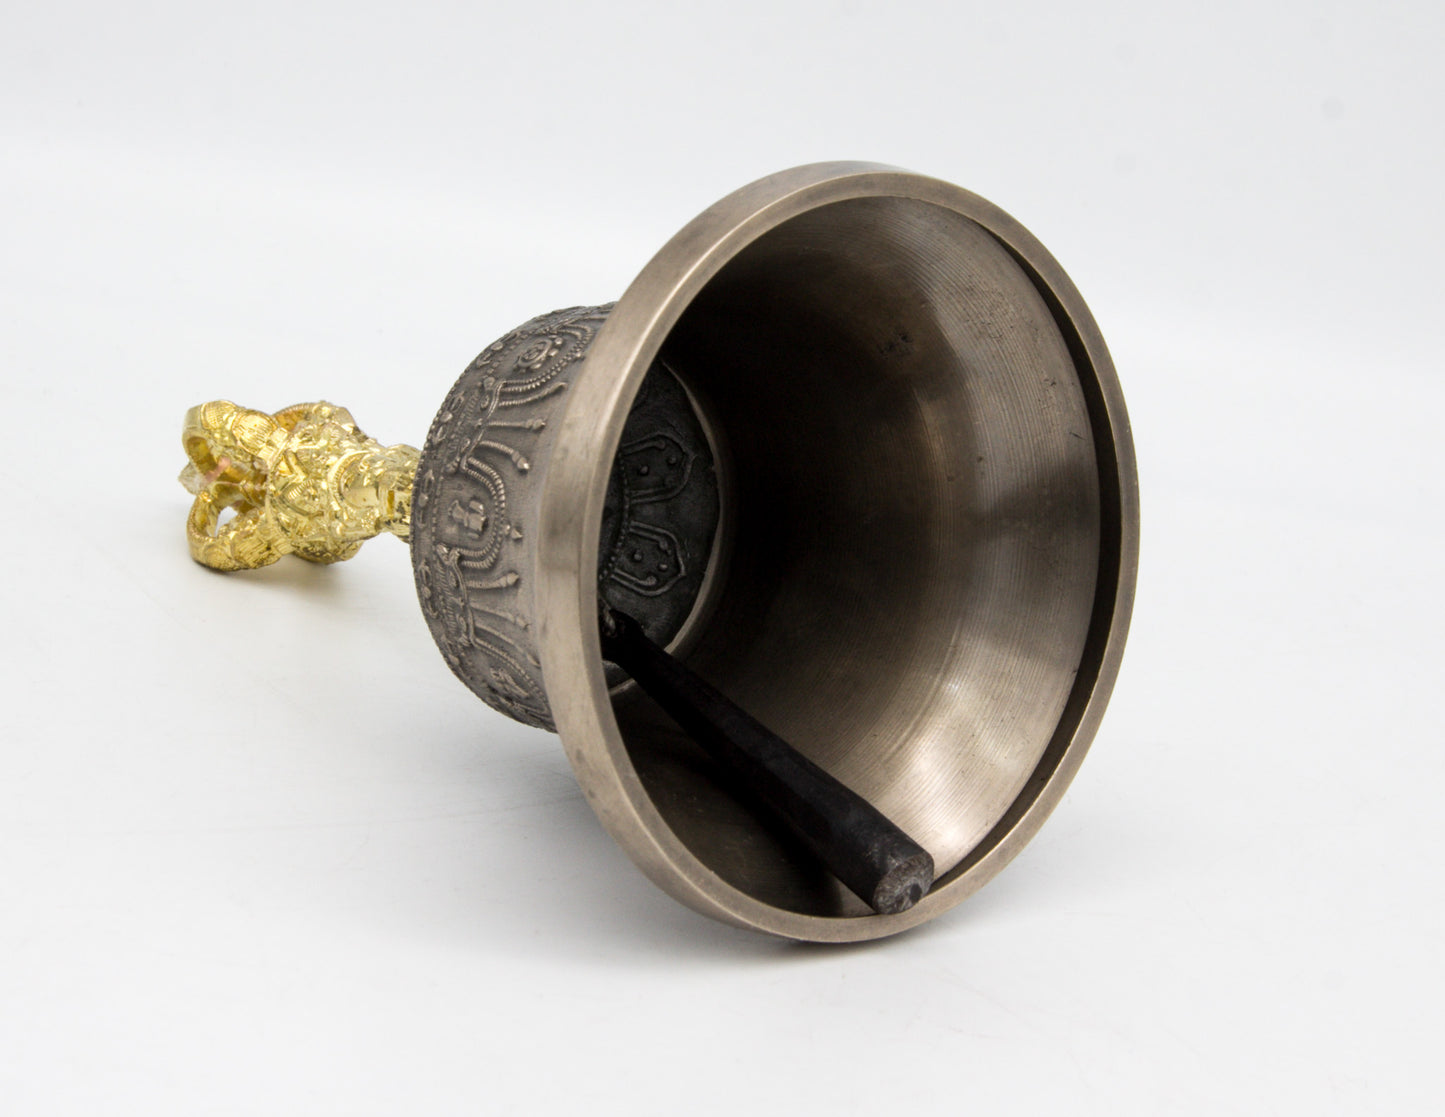 Hoch­qua­li­ta­tive Glocke & Dorje mit Goldkontrast III – Standard